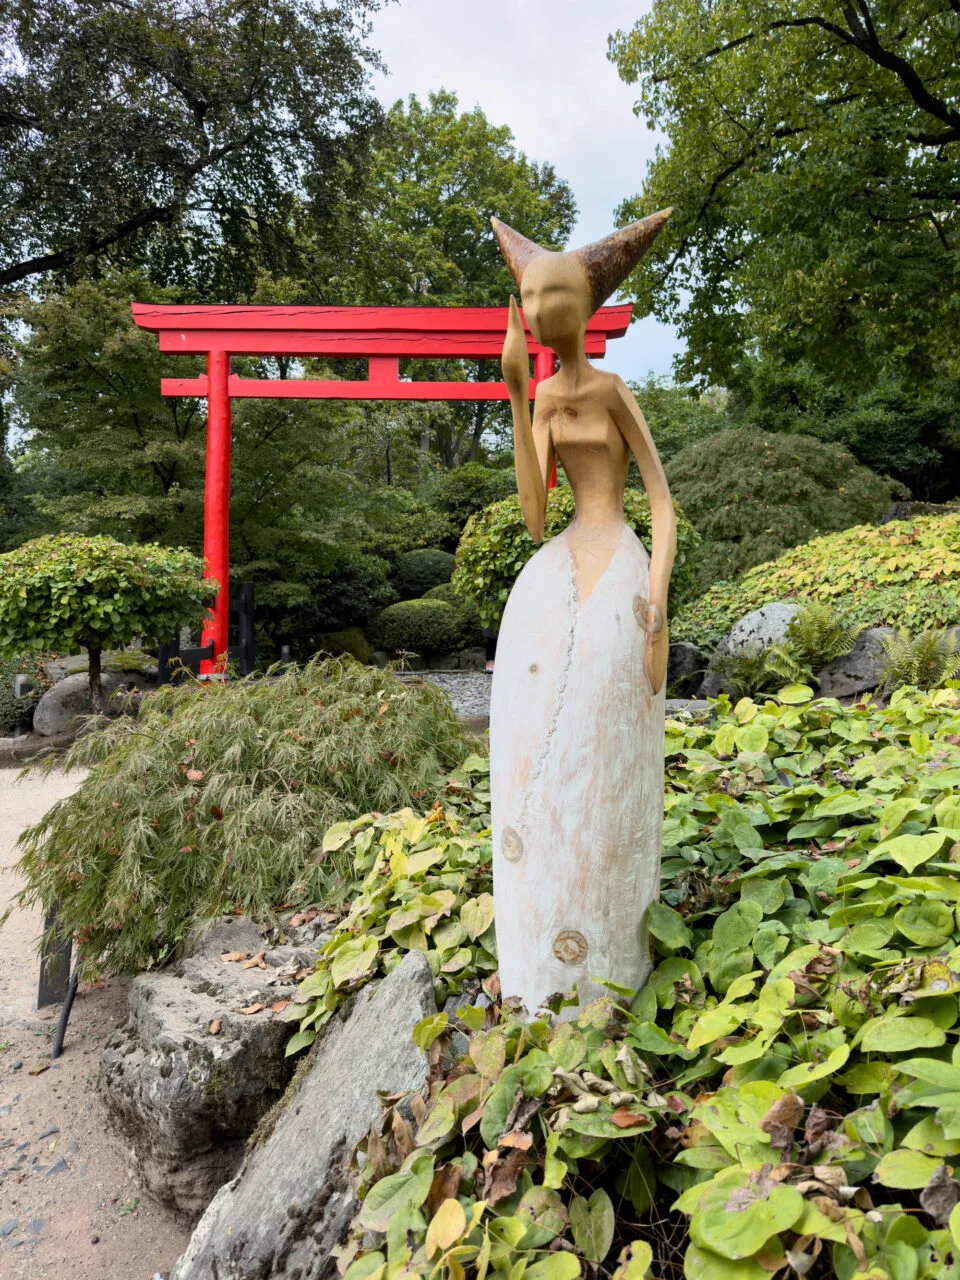 Art sculptures are dotted throughout the Japanischer Garten.